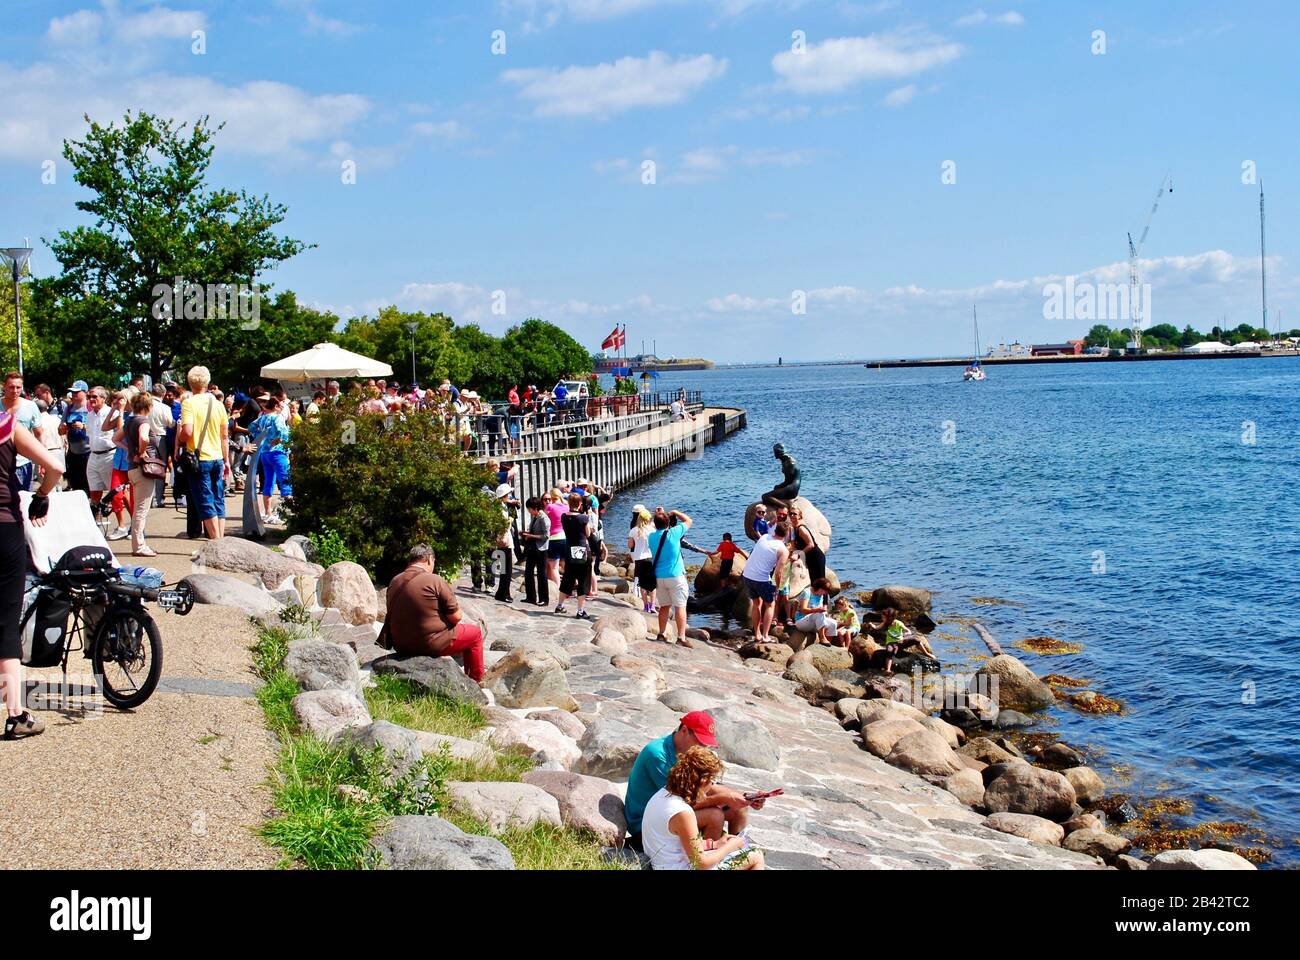 La Petite Sirène (Den Lille Havfrue) à Copenhague, Danemark attire une foule de touristes. Statue la plus photographiée. Artiste: Edvard Eriksen Banque D'Images